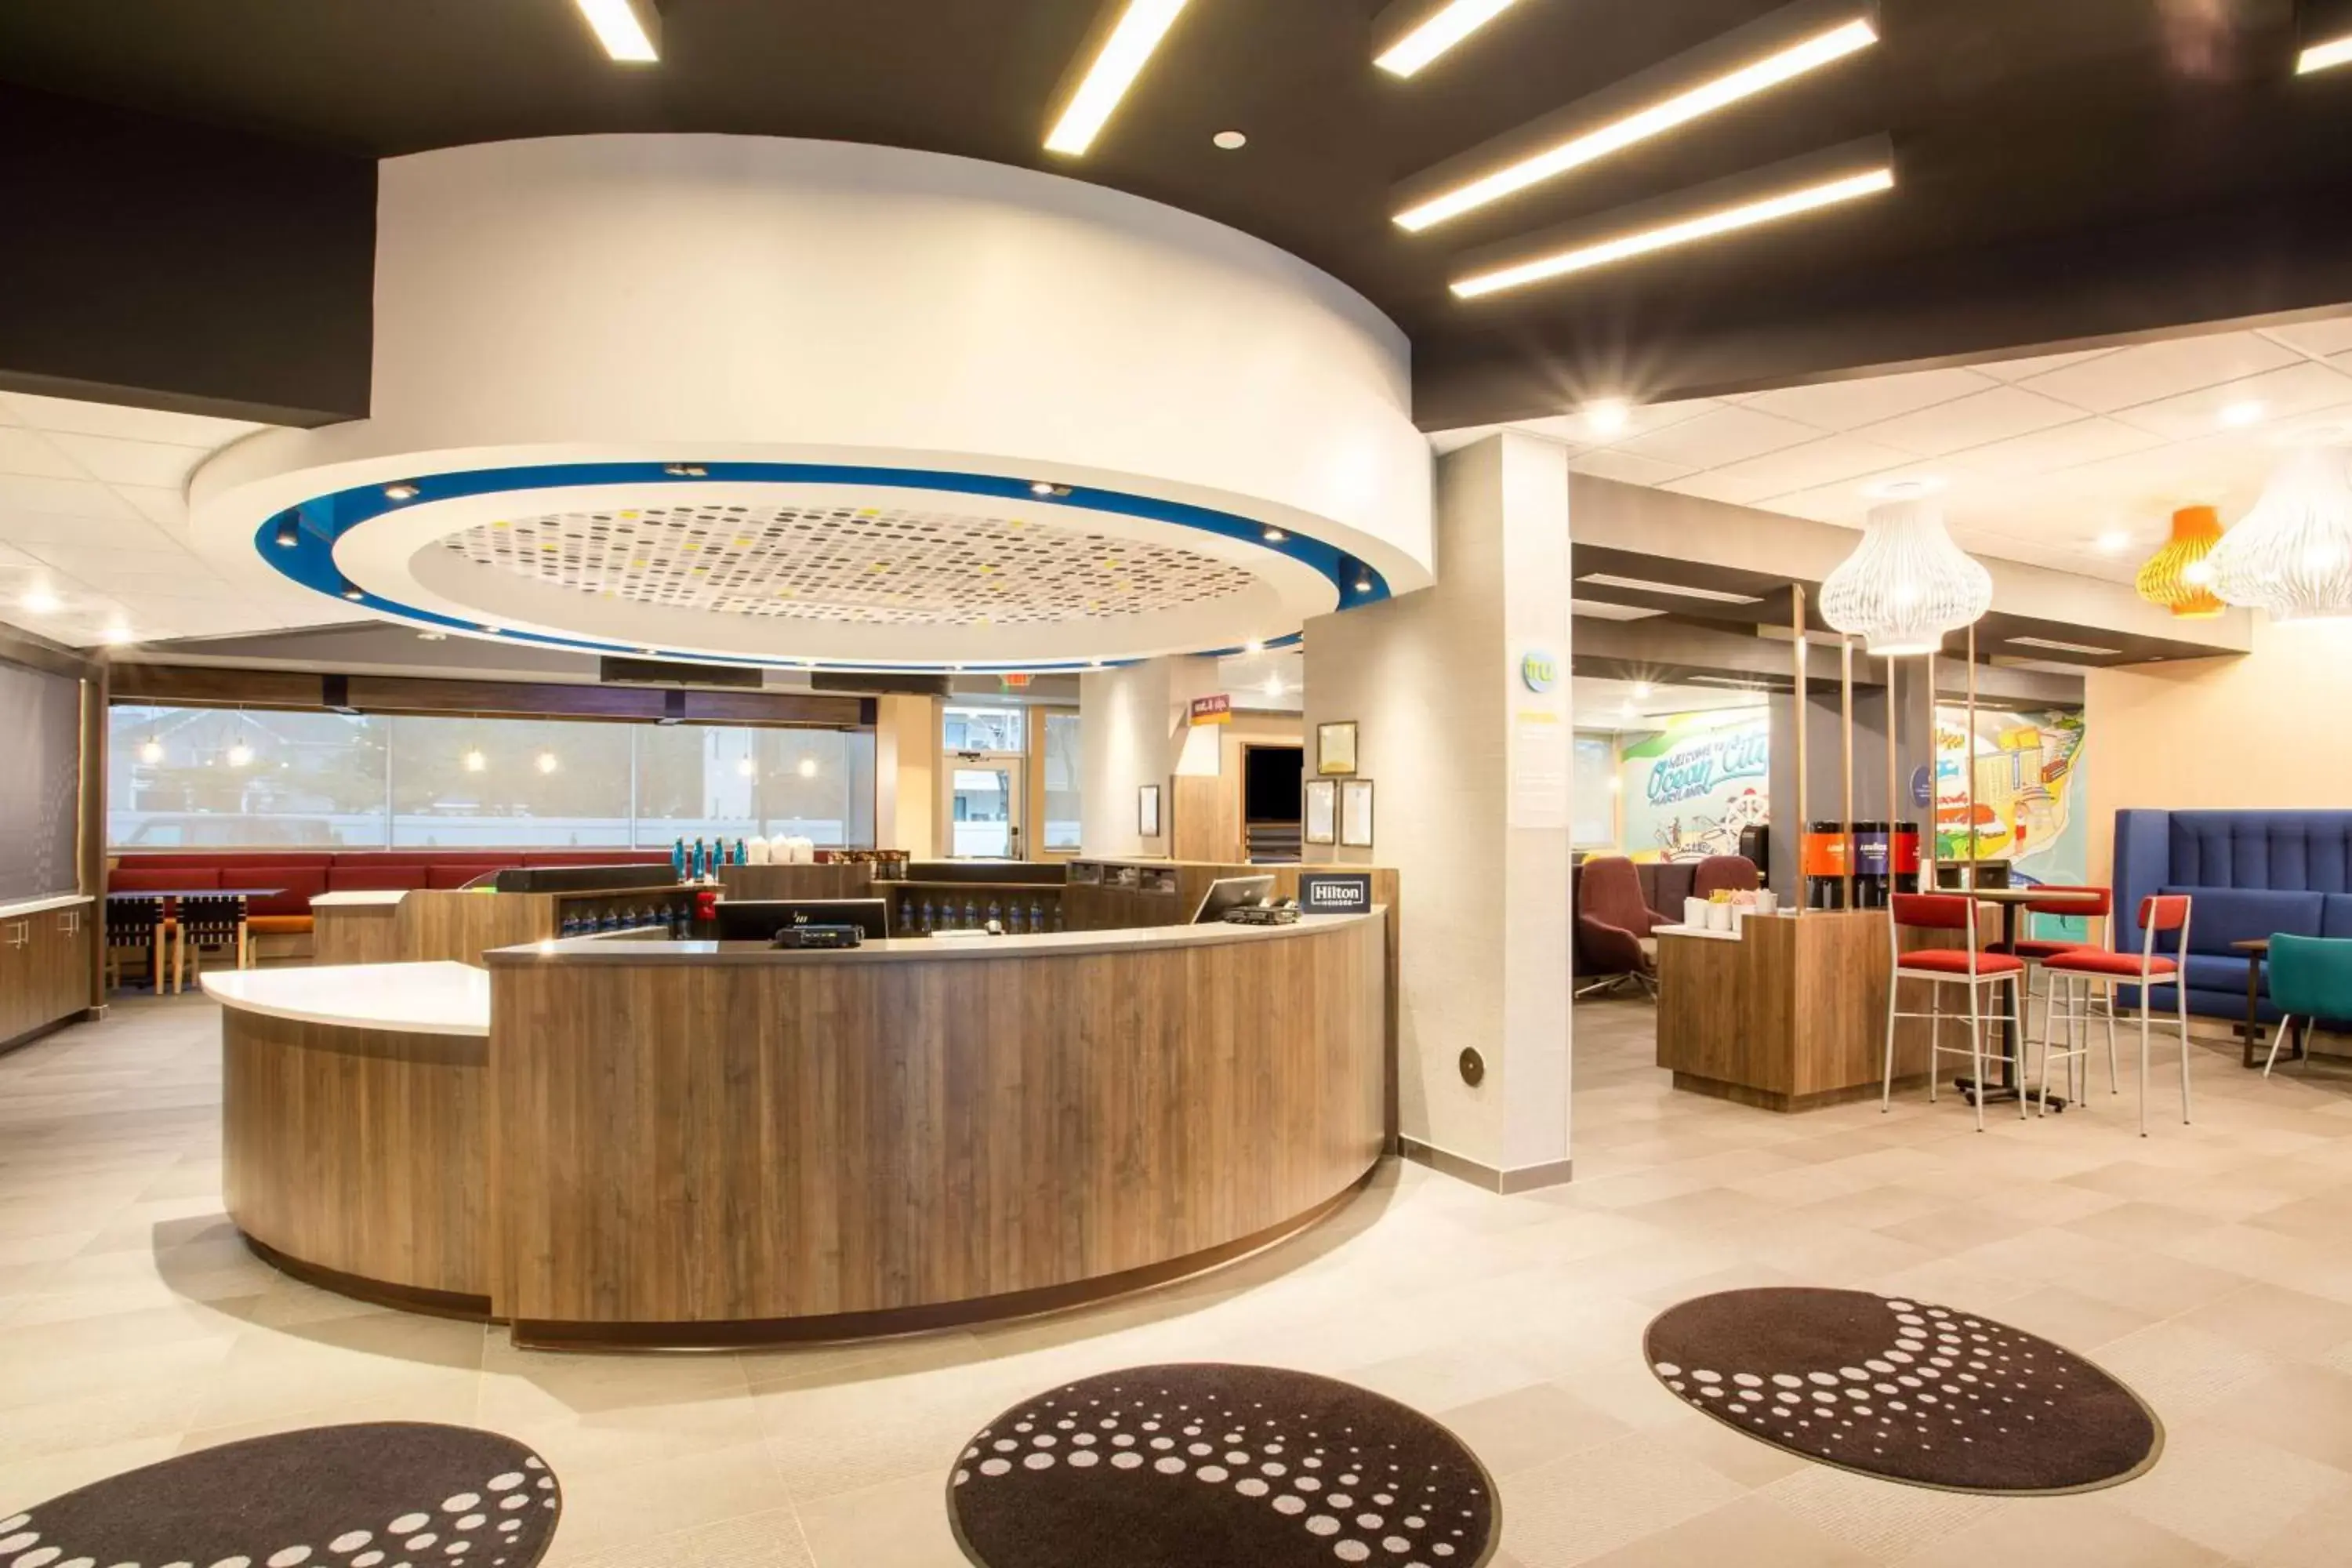 Lobby or reception, Lobby/Reception in Tru By Hilton Ocean City Bayside, Md